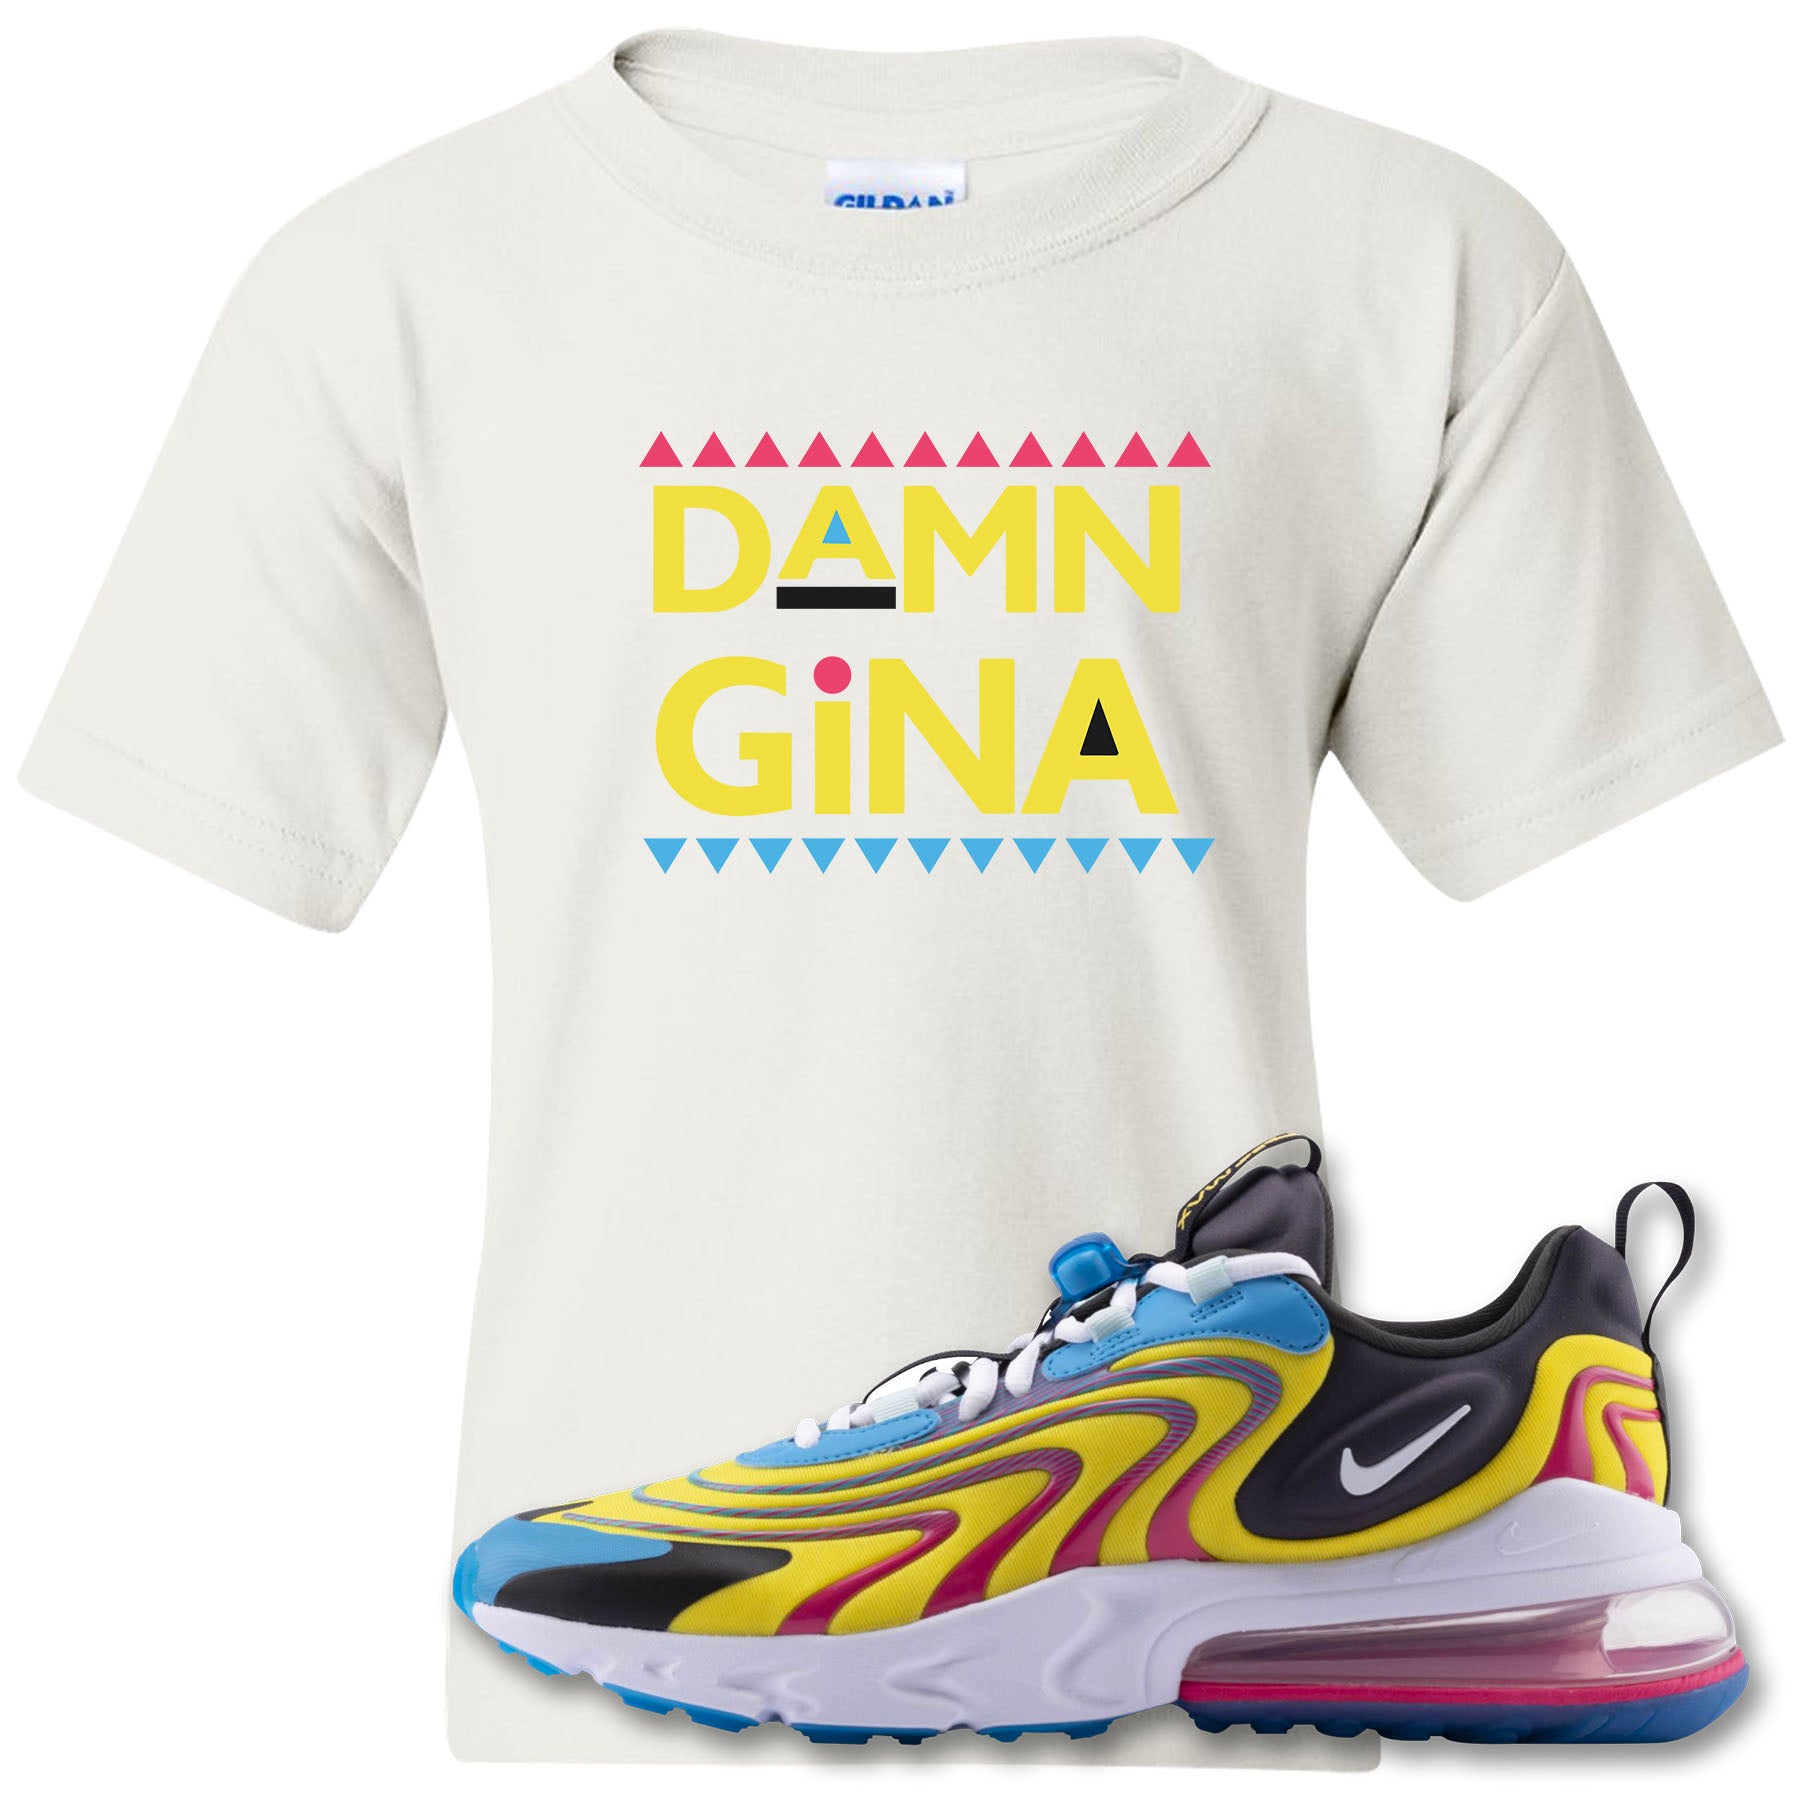 Damn Gina White Kid S T Shirt To Match Air Max 270 React Eng Laser Blu Cap Swag